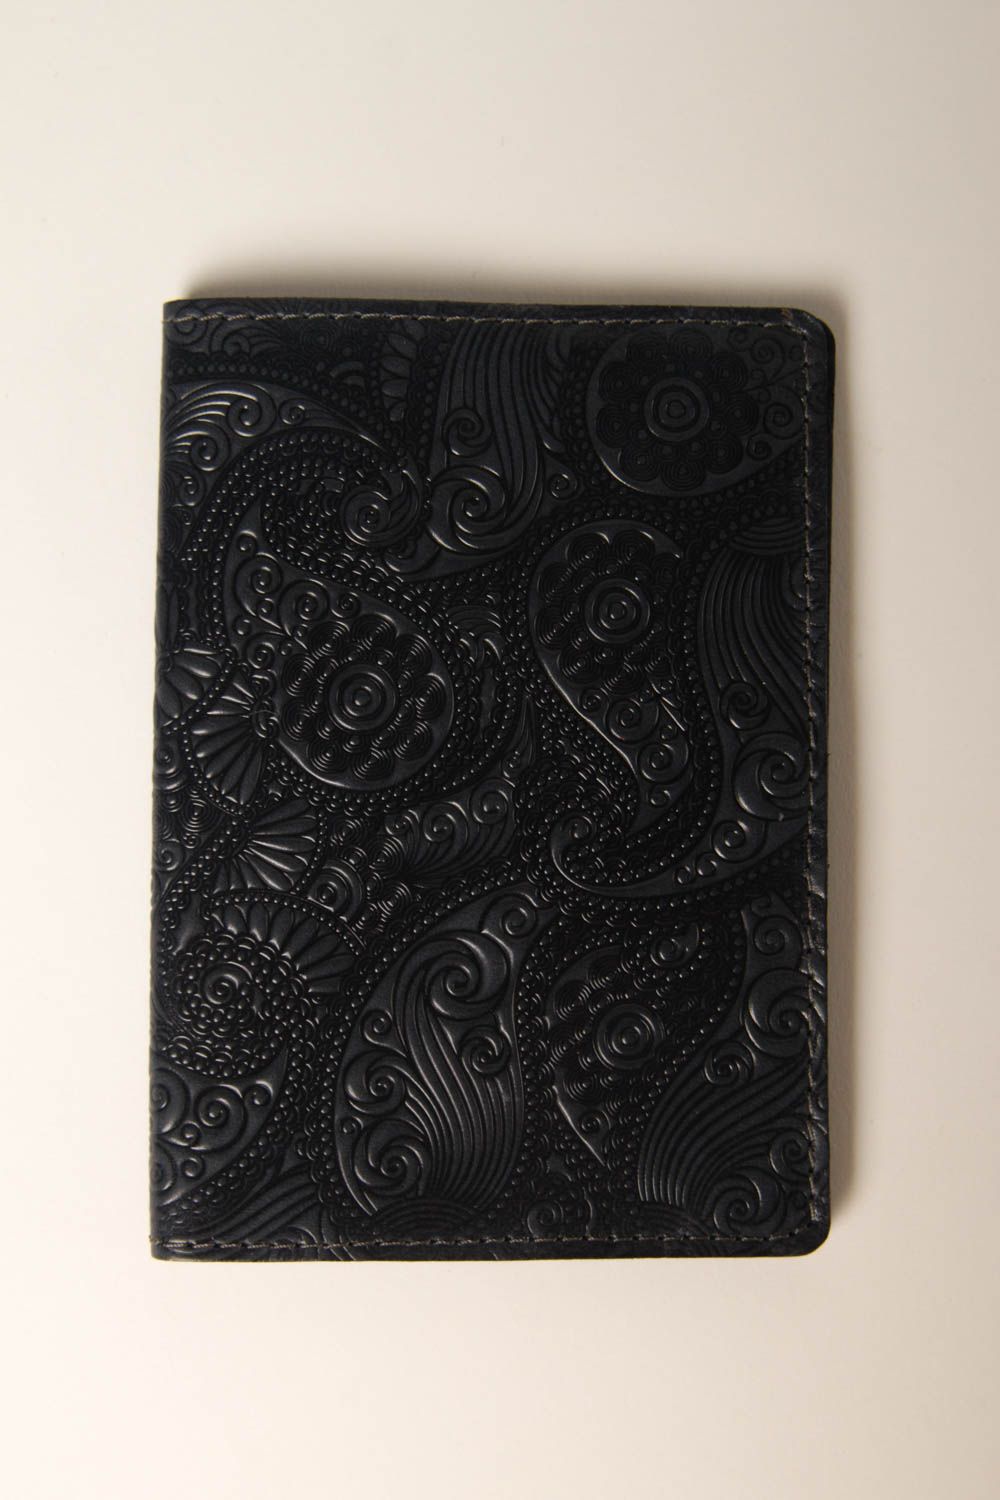 Handgefertigt Pass Schutzhülle Reisepass Cover Ausweis Schutzhülle in schwarz foto 2